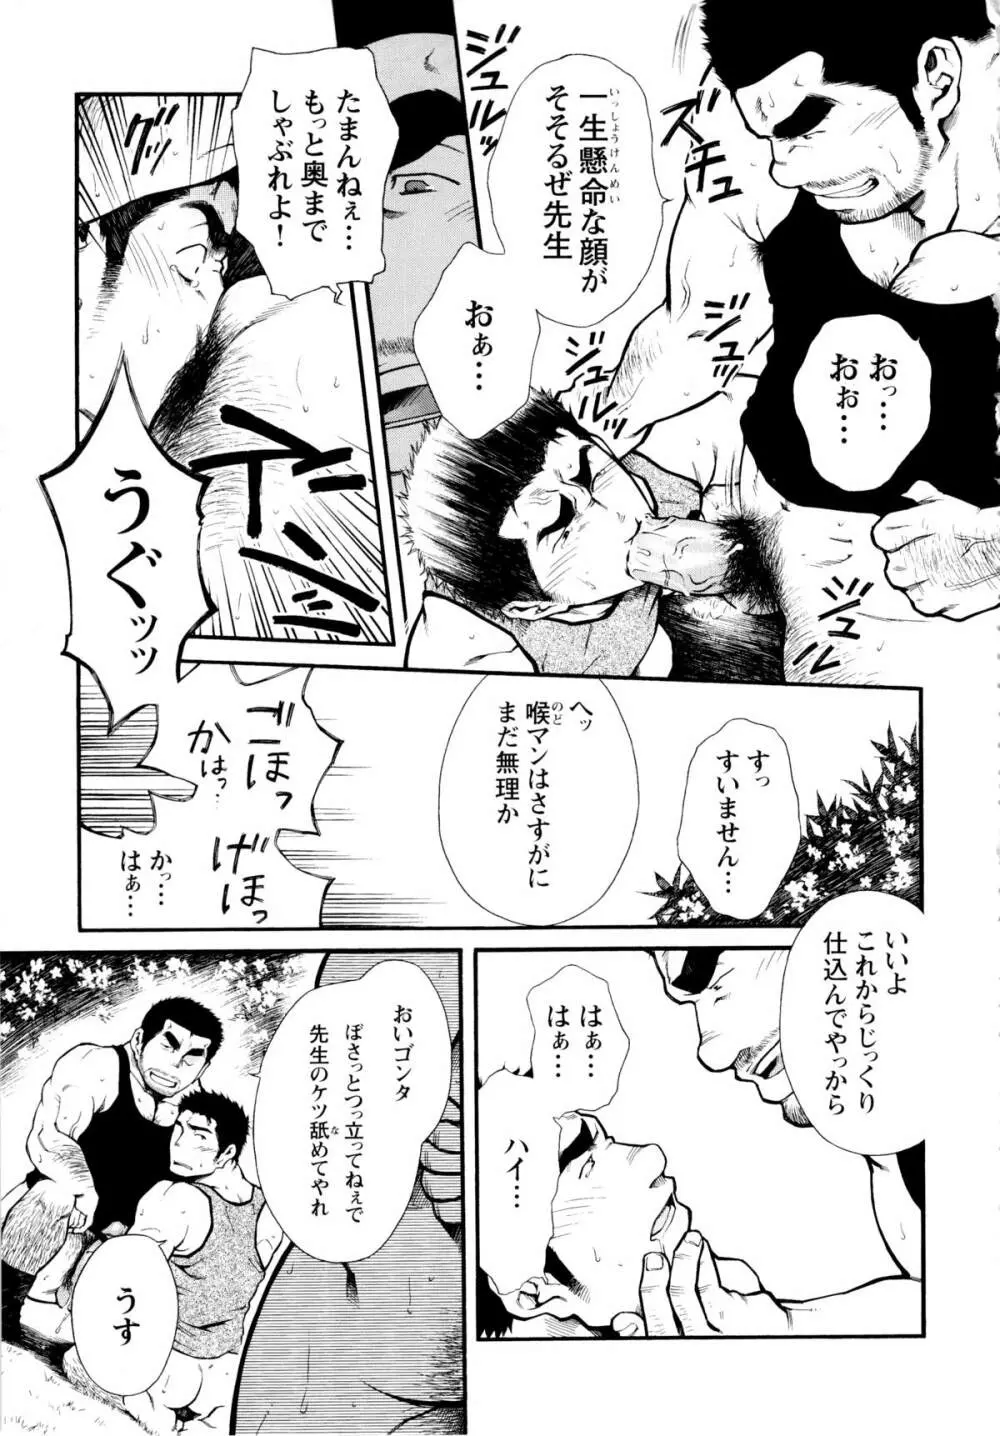 Osu Hachi no Mitsu – by -晃次郎 (Terujirou) 17ページ